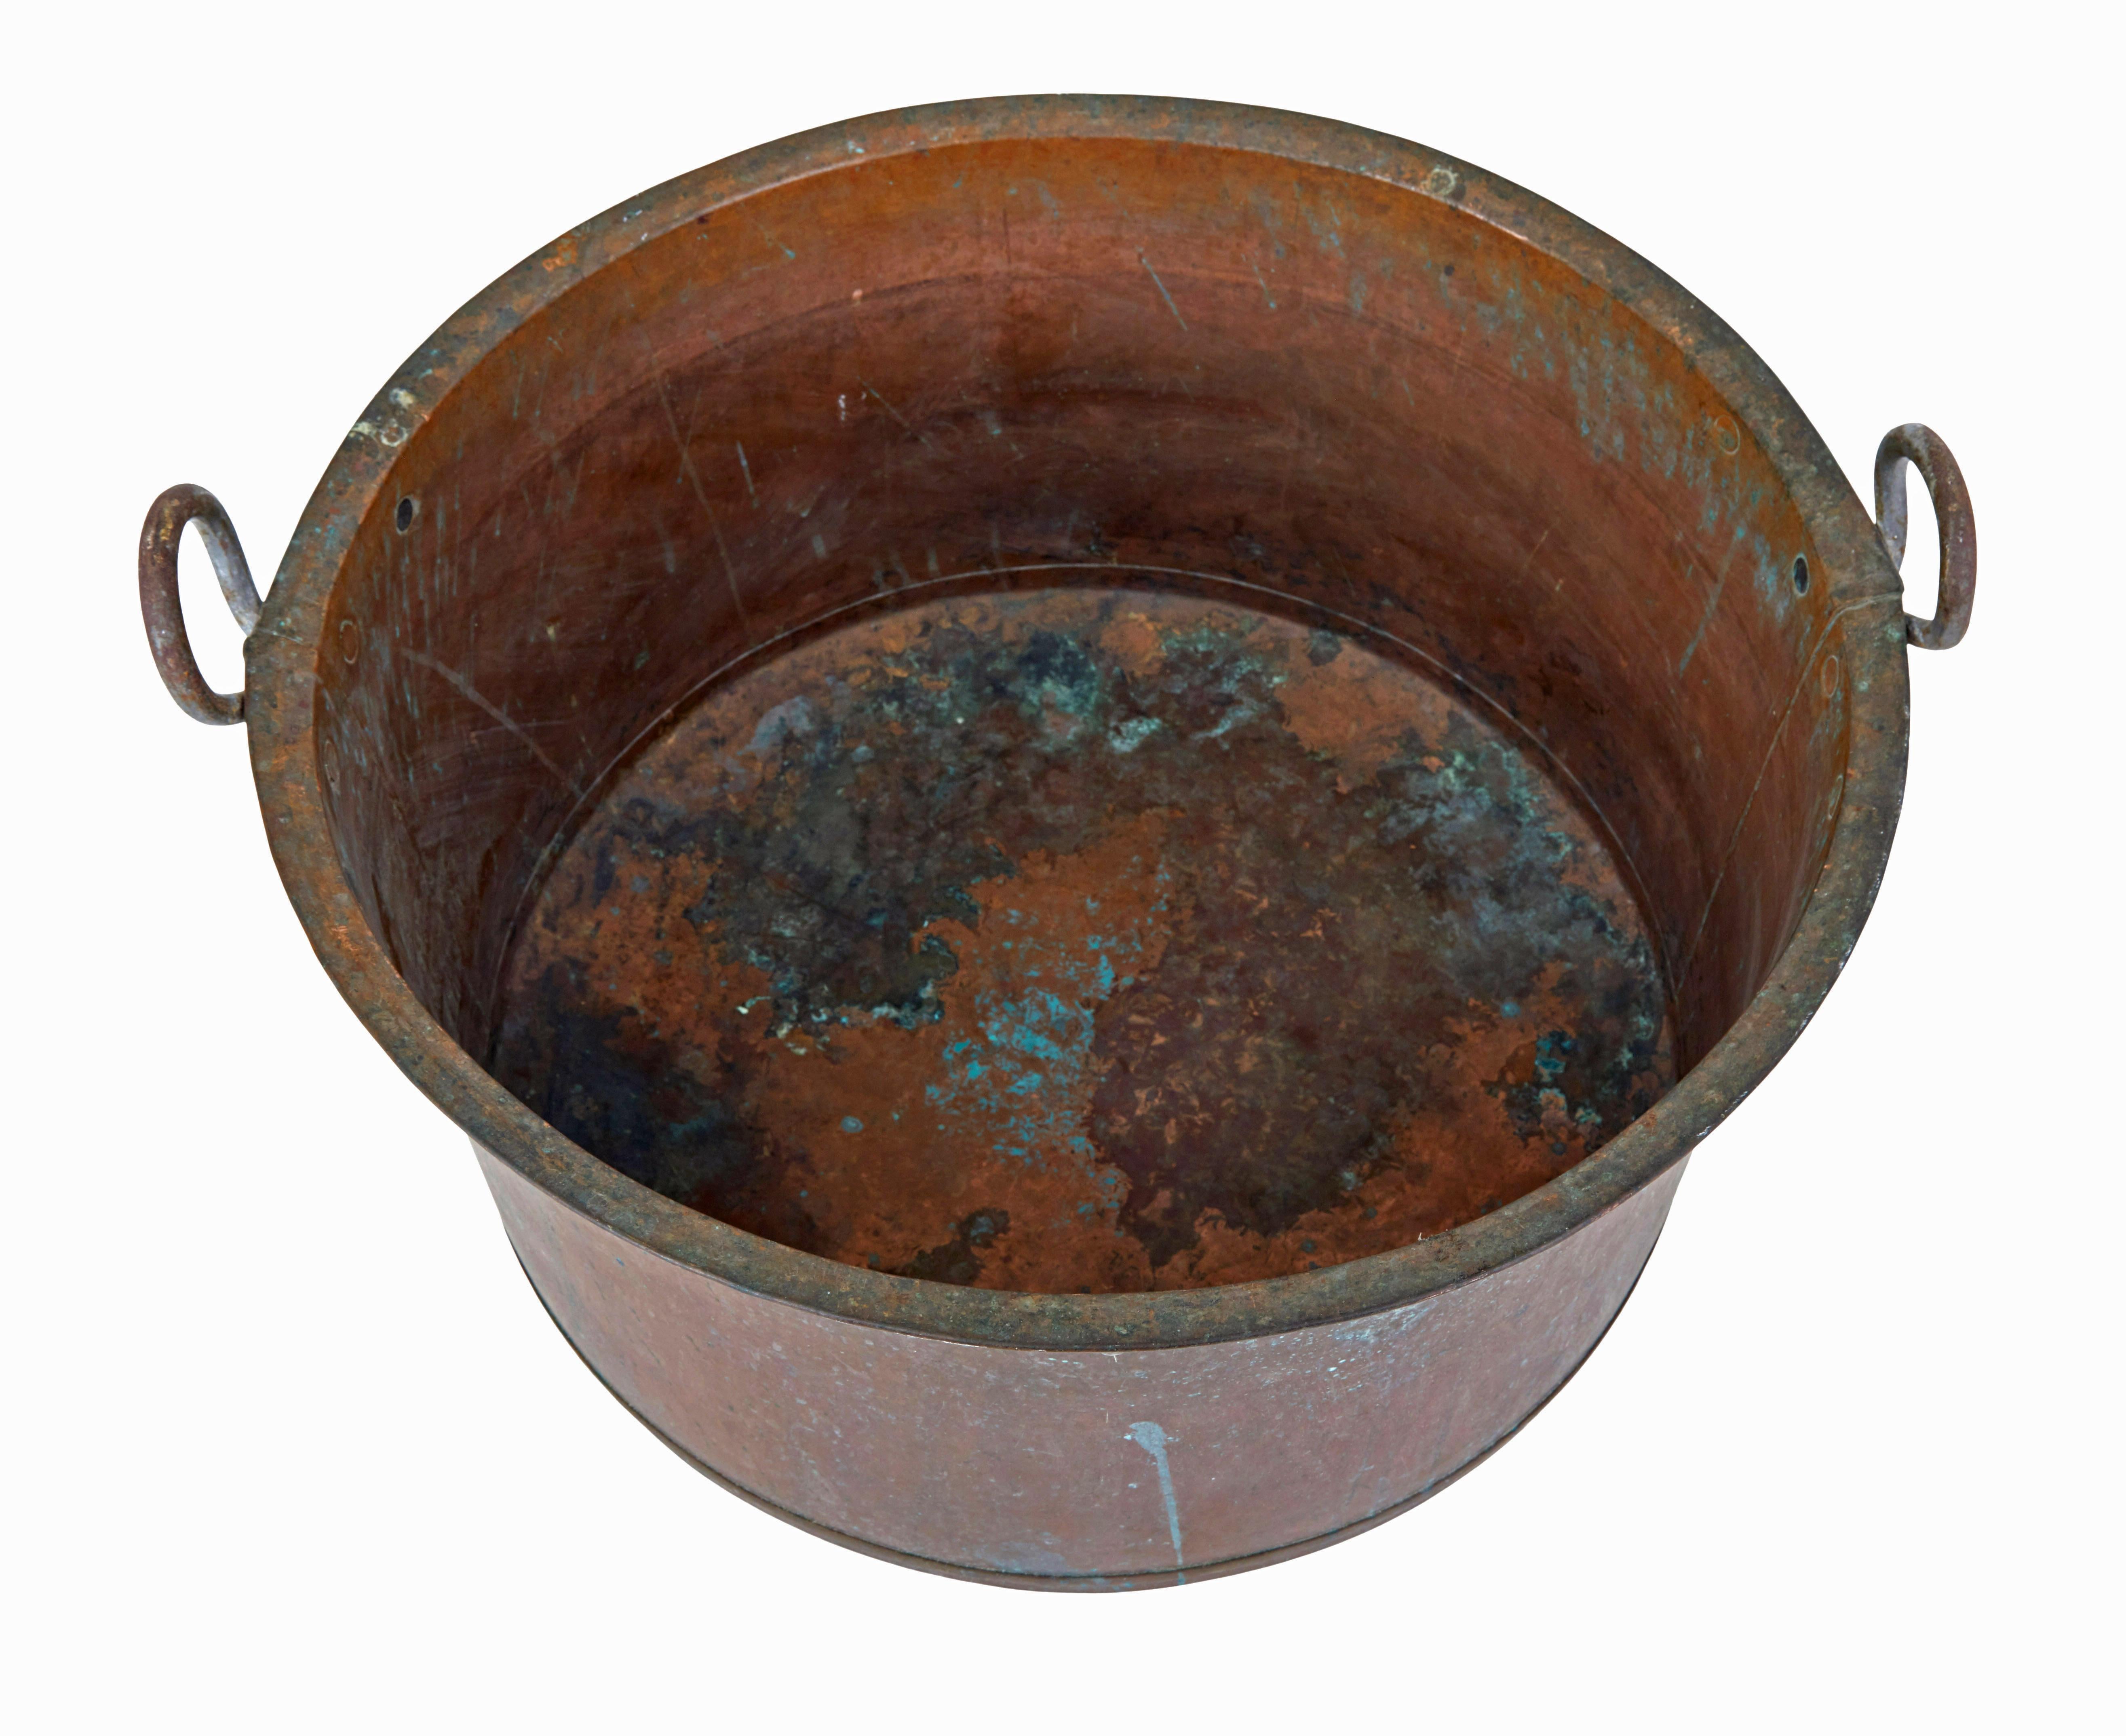 Kupferkochgefäß aus dem späten 19. Jahrhundert, um 1890.

Dieses große Kochgefäß aus Metall des 19. Jahrhunderts ist von guter Qualität und dient heute als idealer Aufbewahrungsort für Holzscheite oder Anzündholz am Kamin.

Hergestellt aus Kupfer